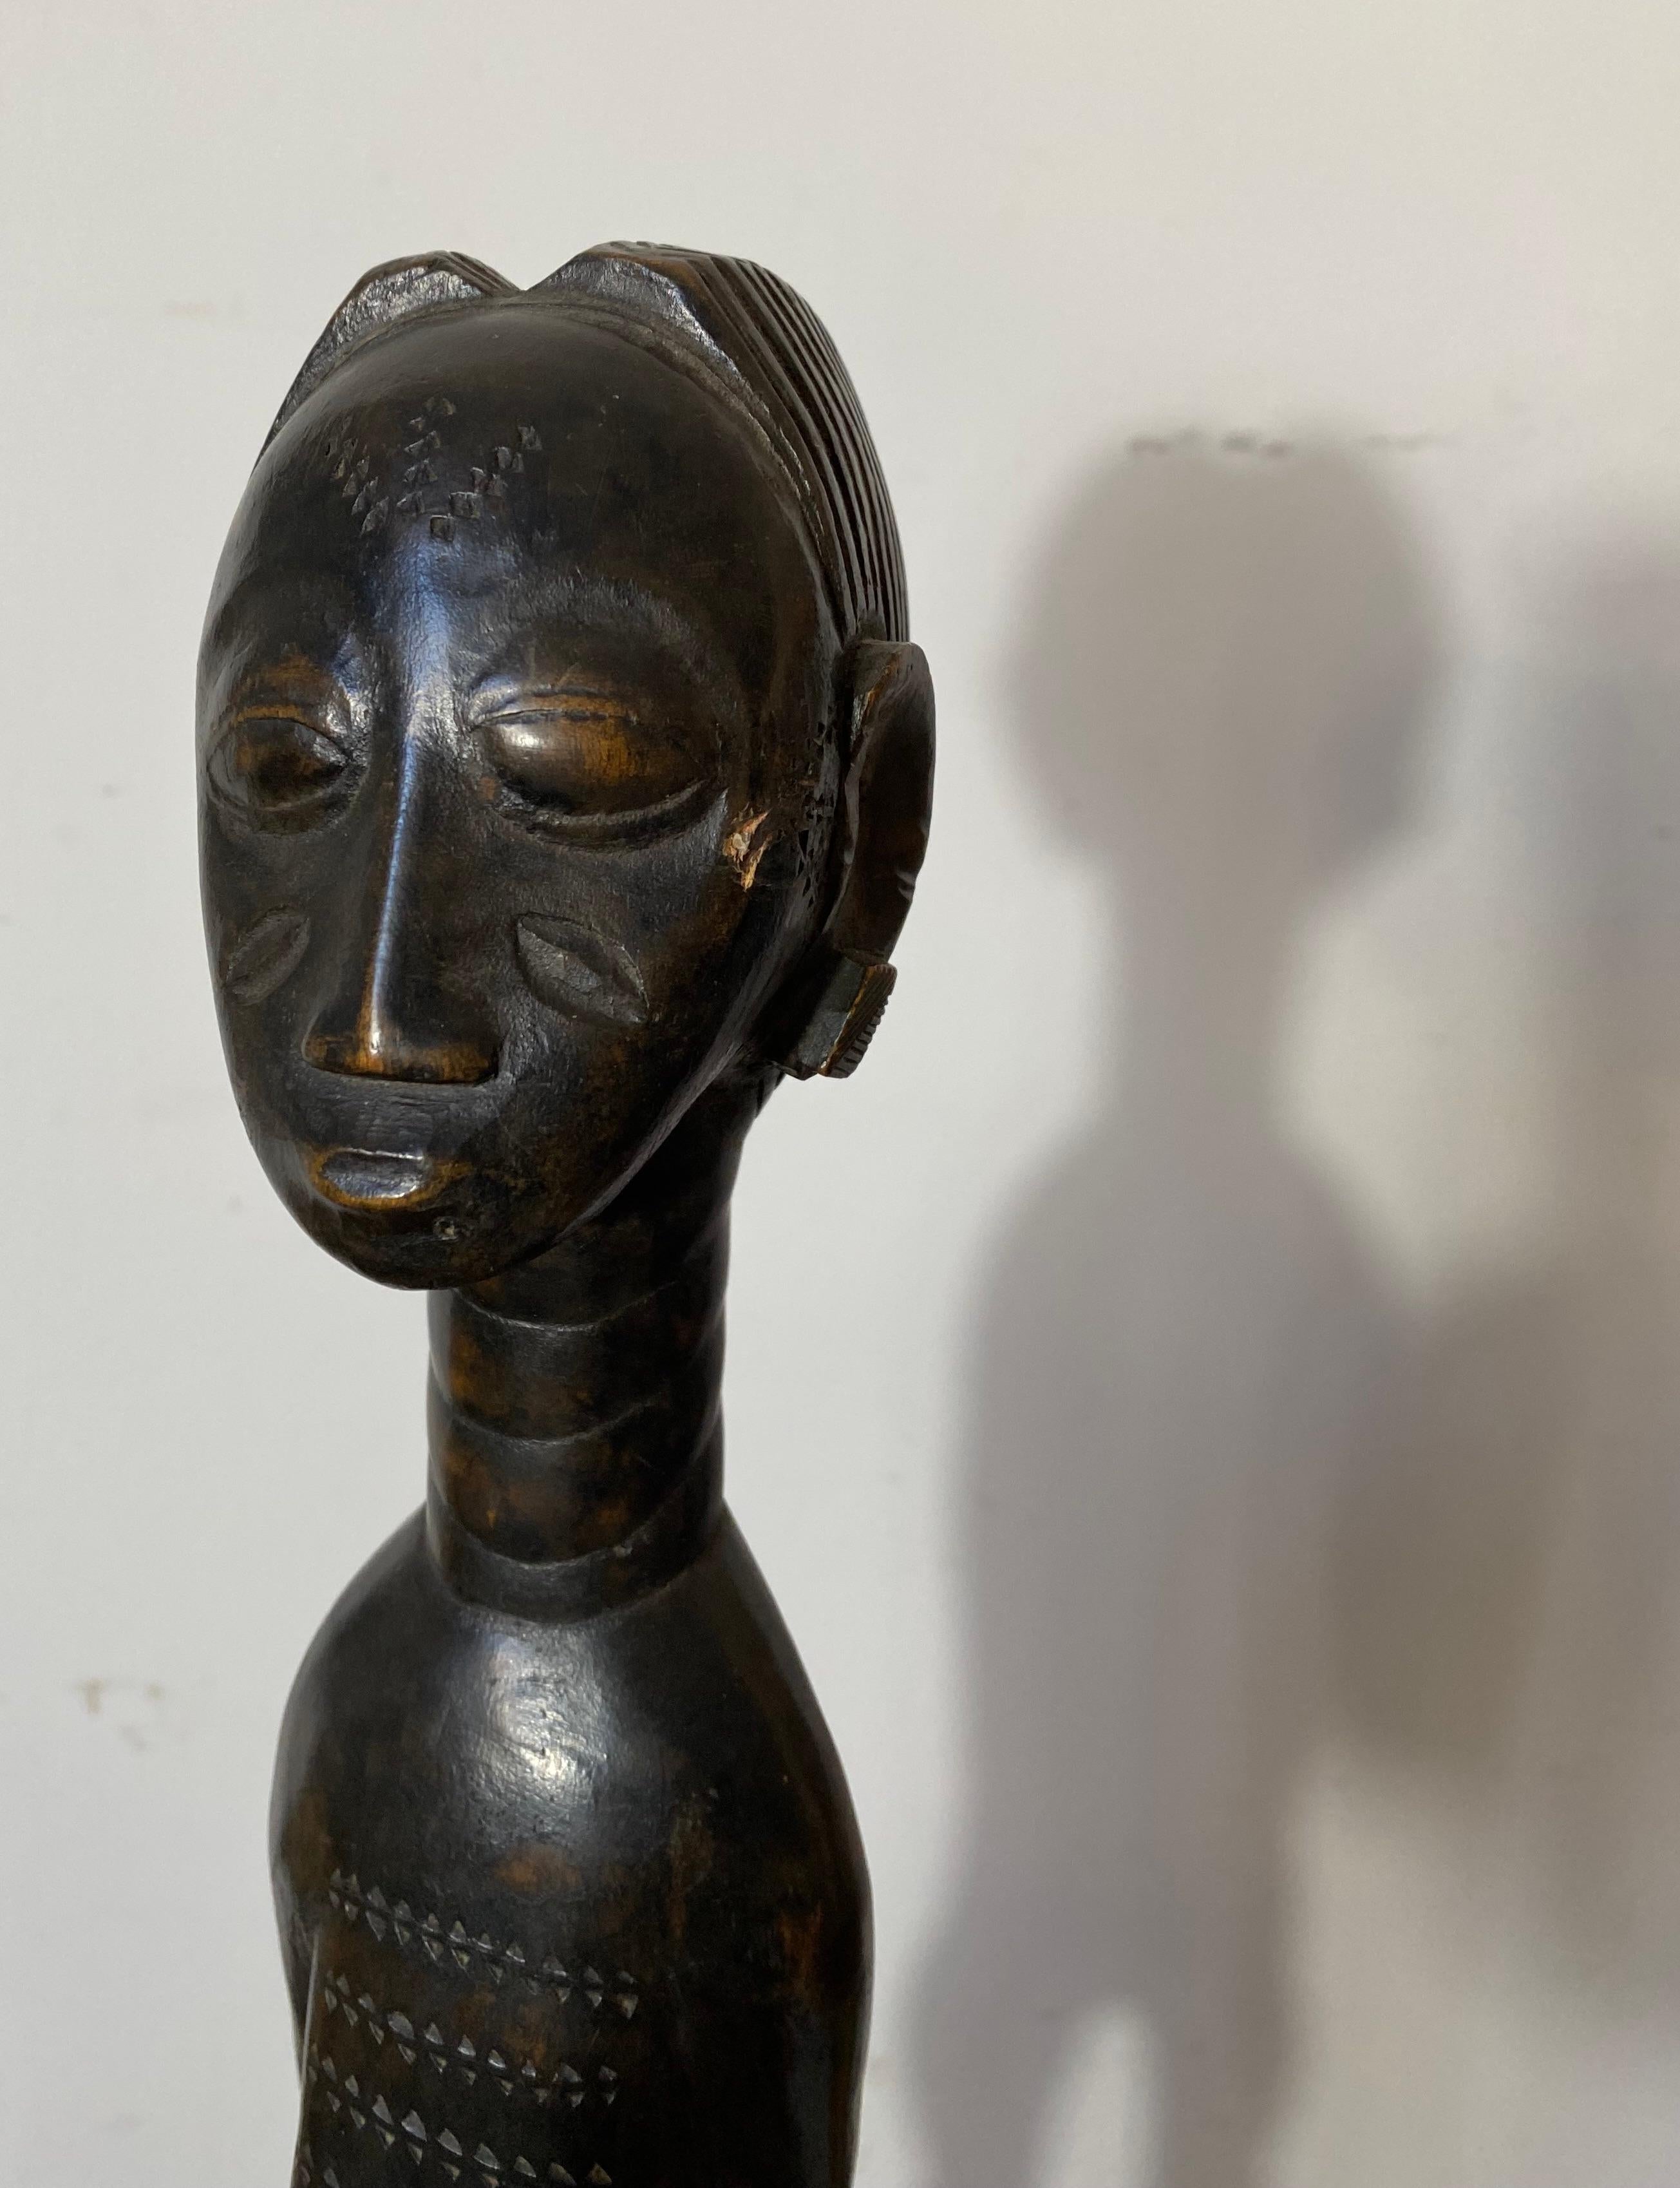 Une élégante sculpture africaine du peuple Baoulé ou Baoulé d'Afrique de l'Ouest, représentant une jeune femme portant un pagne. Patine noire lisse légèrement usée.